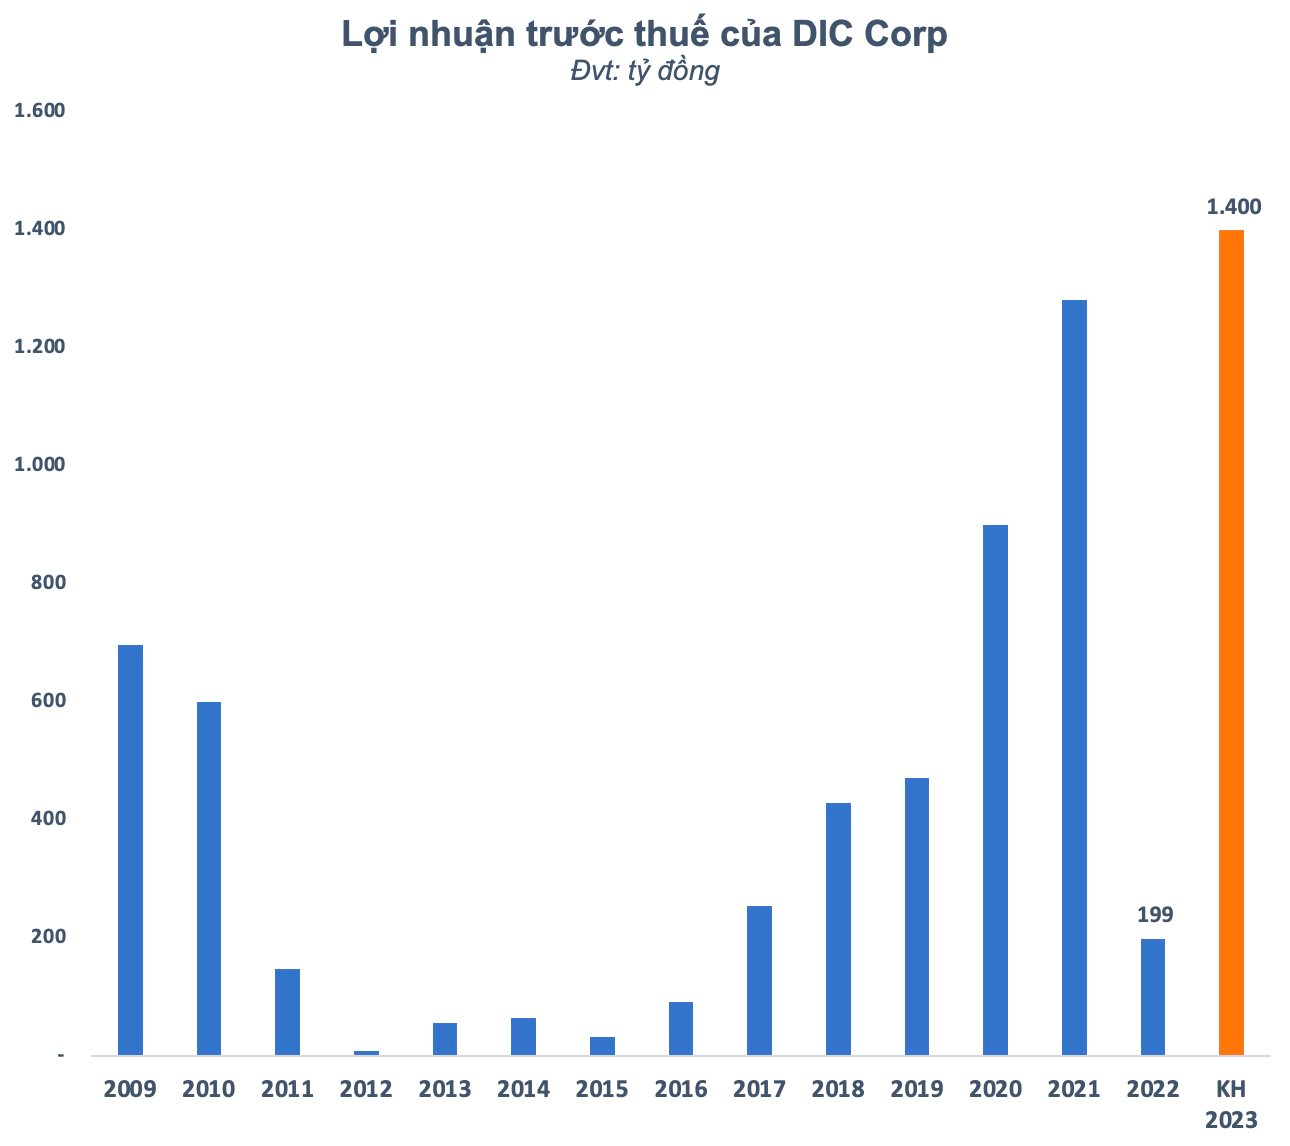 "Bể" kế hoạch 2022, DIC Corp (DIG) bất ngờ đặt kế hoạch lãi kỷ lục 1.400 tỷ đồng vào năm 2023